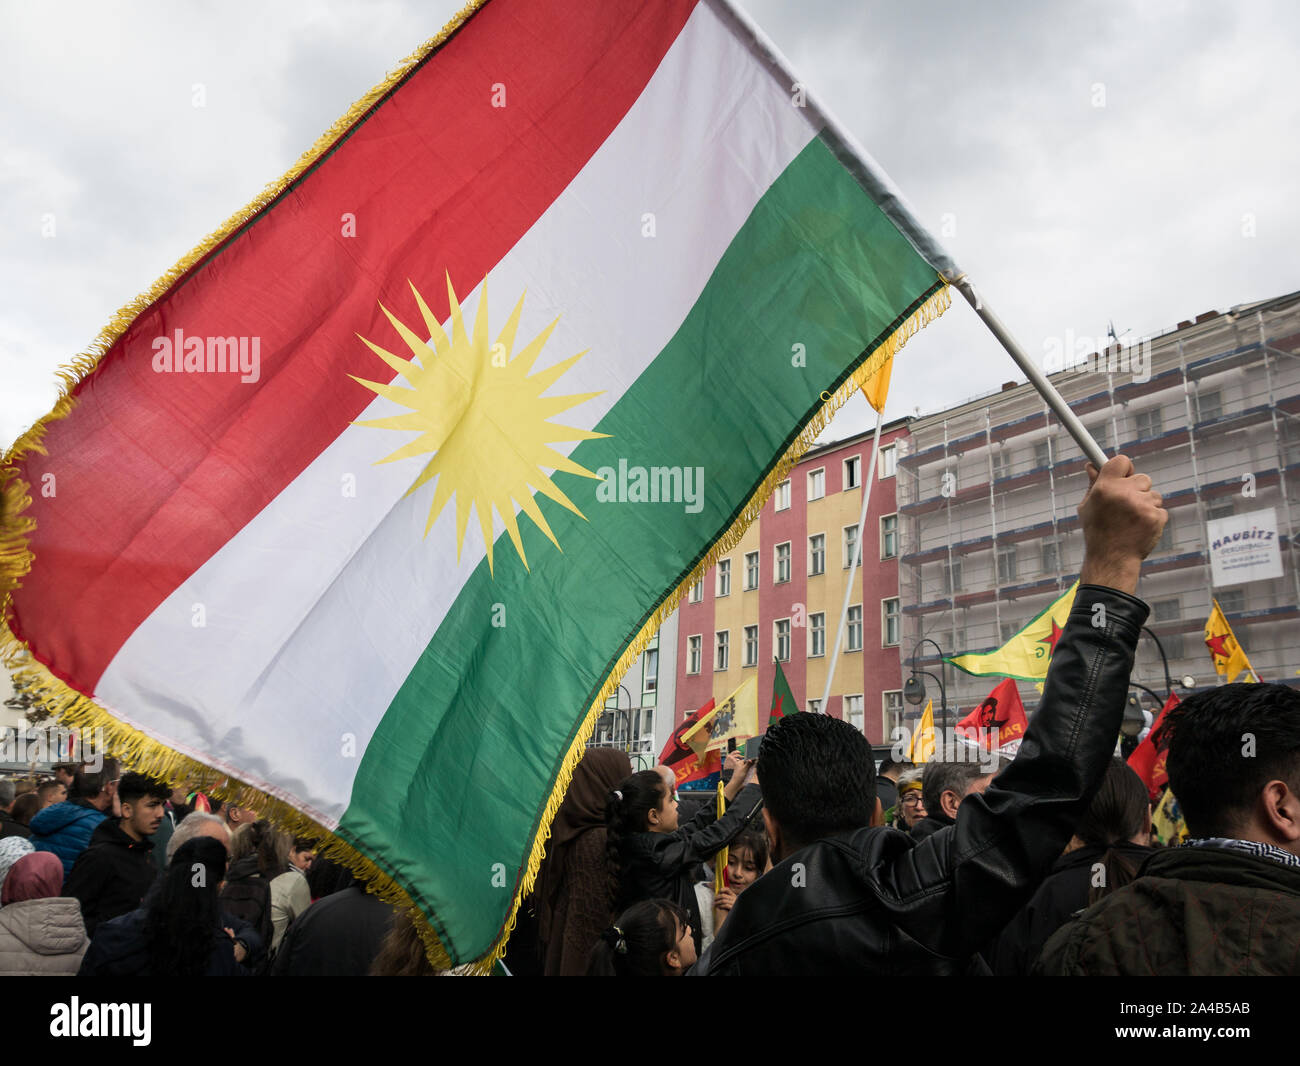 Berlín/Alemania: Demostración y protestar contra la ofensiva turca y agresiones contra los kurdos en Siria, la gran bandera de Kurdistán en primer plano Foto de stock